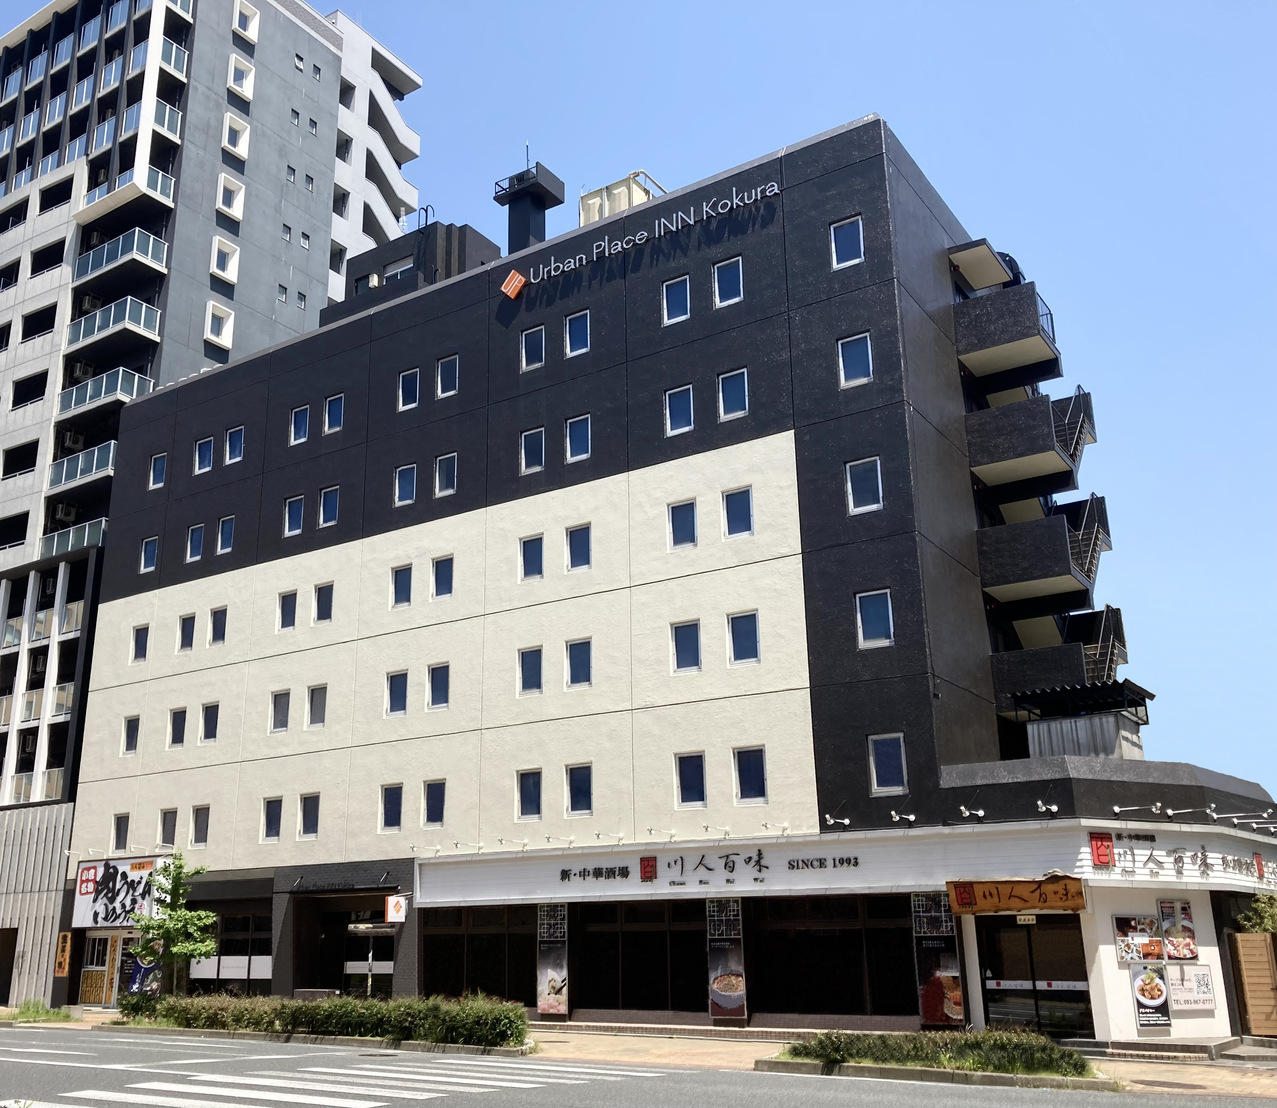 Urban Place Inn Kokura